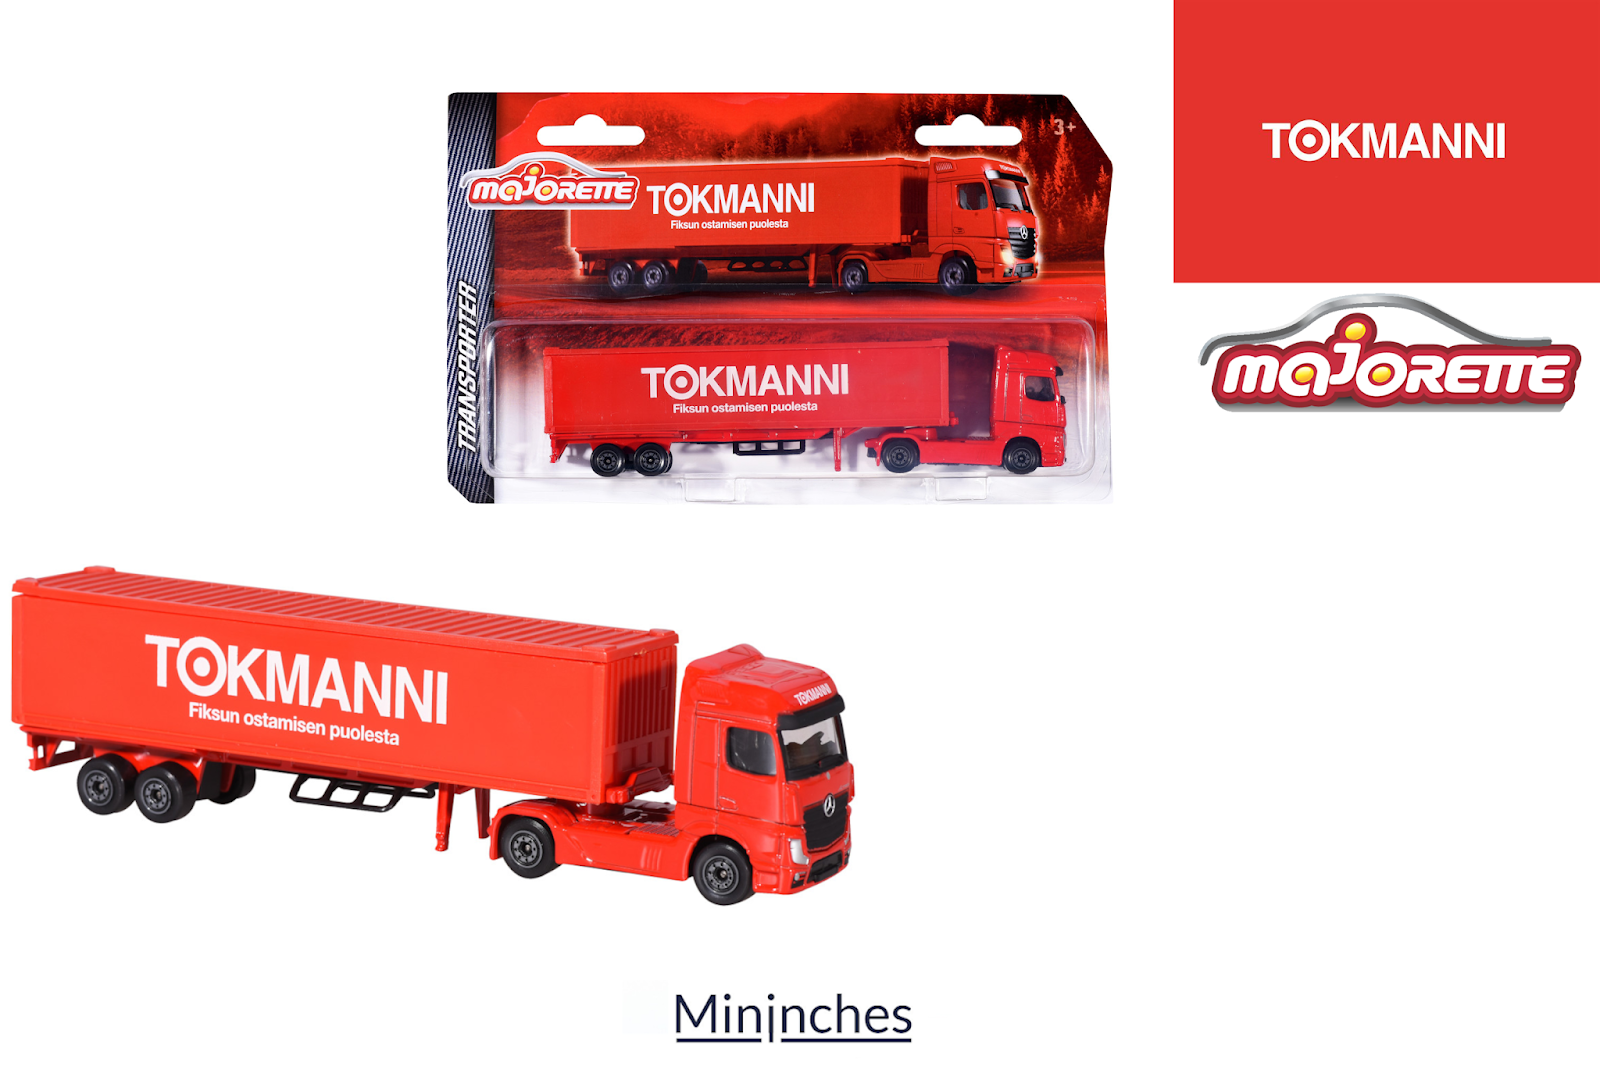 Un camion Majorette promotionnel pour la chaîne de magasins Finlandaise  Tokmanni - Mininches